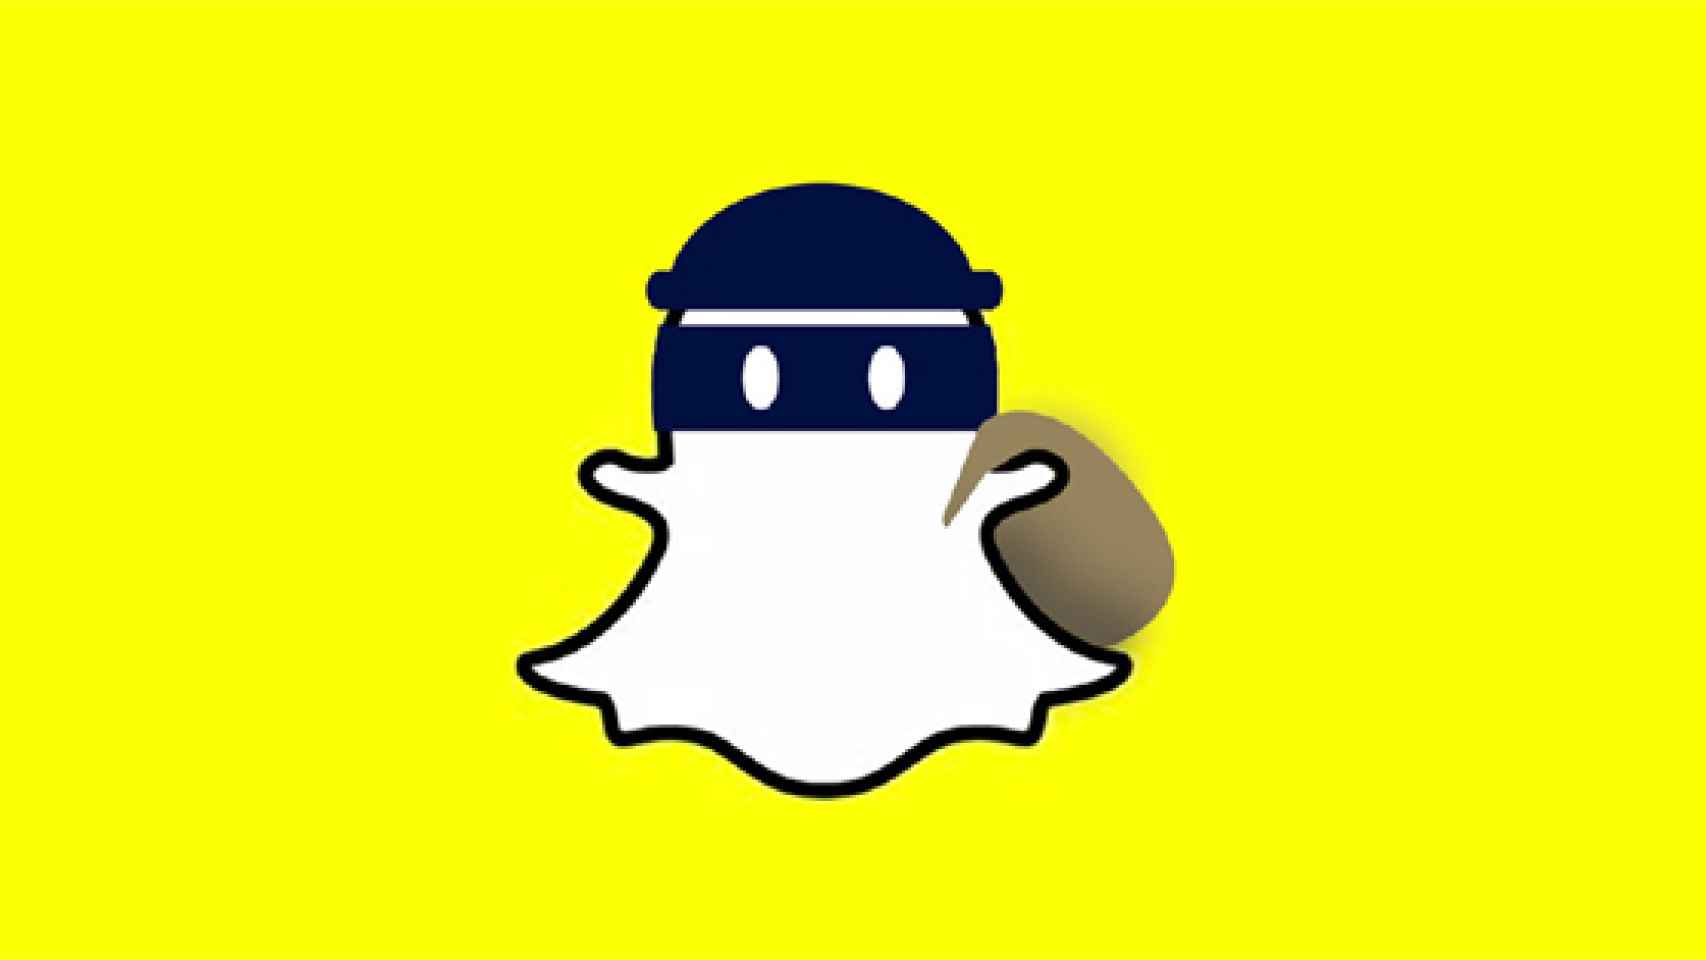 ¿Snapchat copia a los artistas con sus filtros y máscaras?